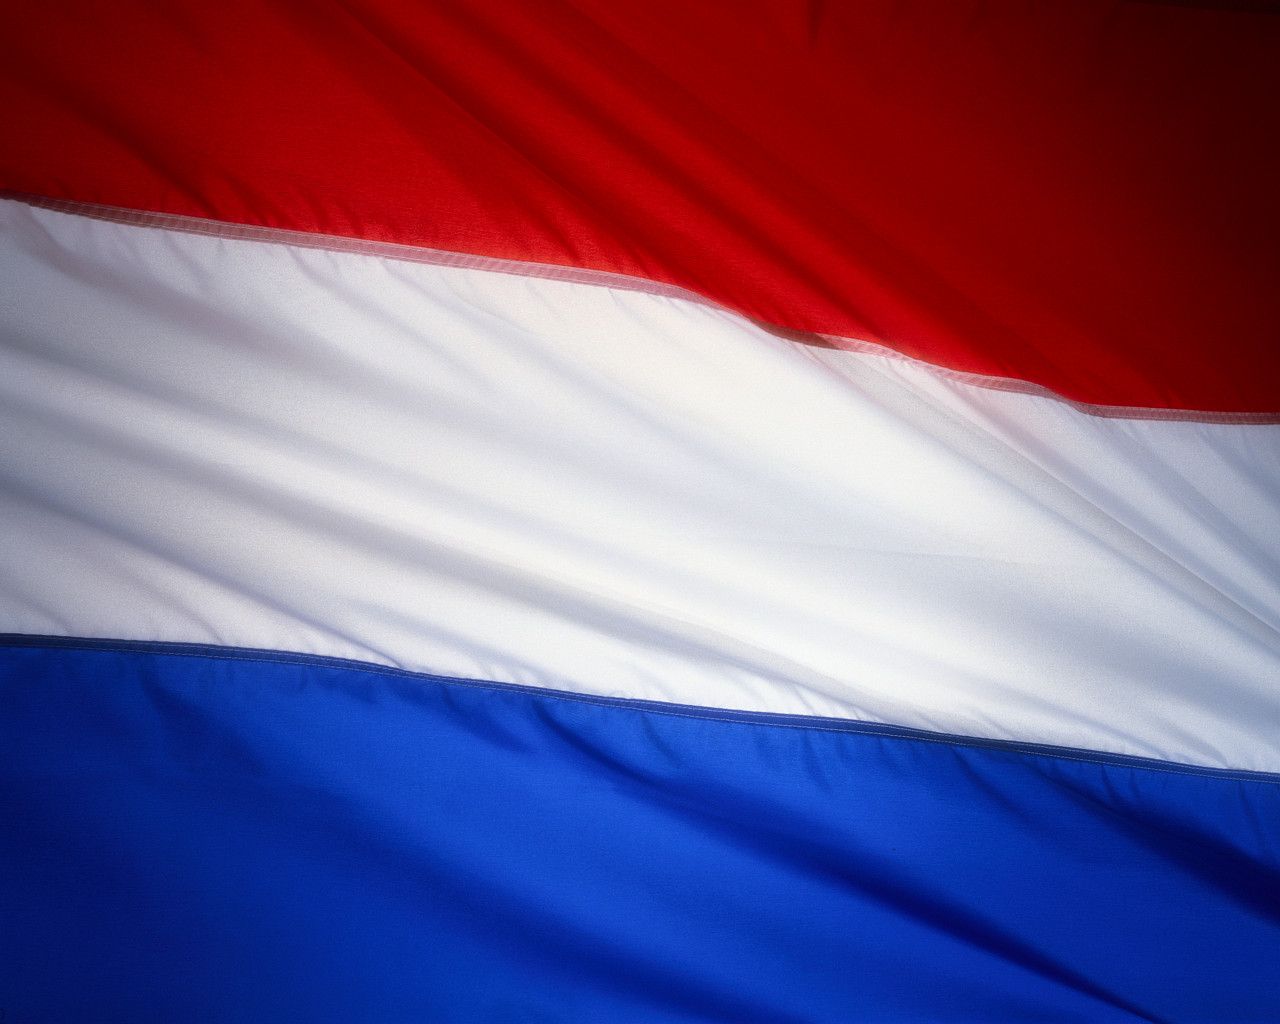 netherlands flag Large Image. Netherlands flag, Dutch flag, Netherlands